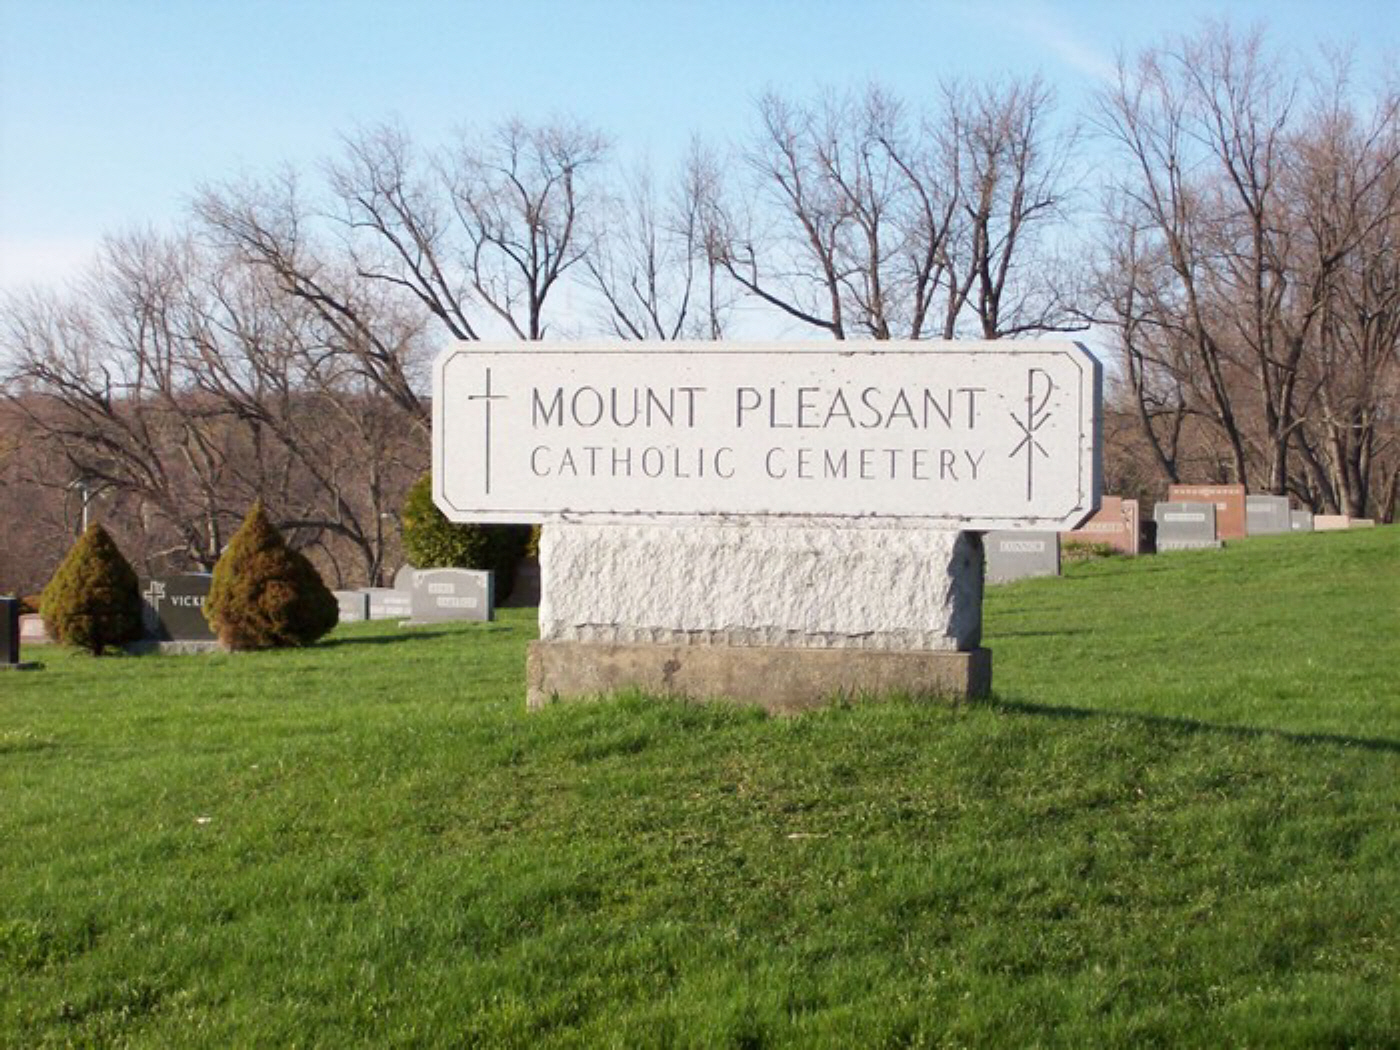 Mount Pleasant Catholic Cemetery